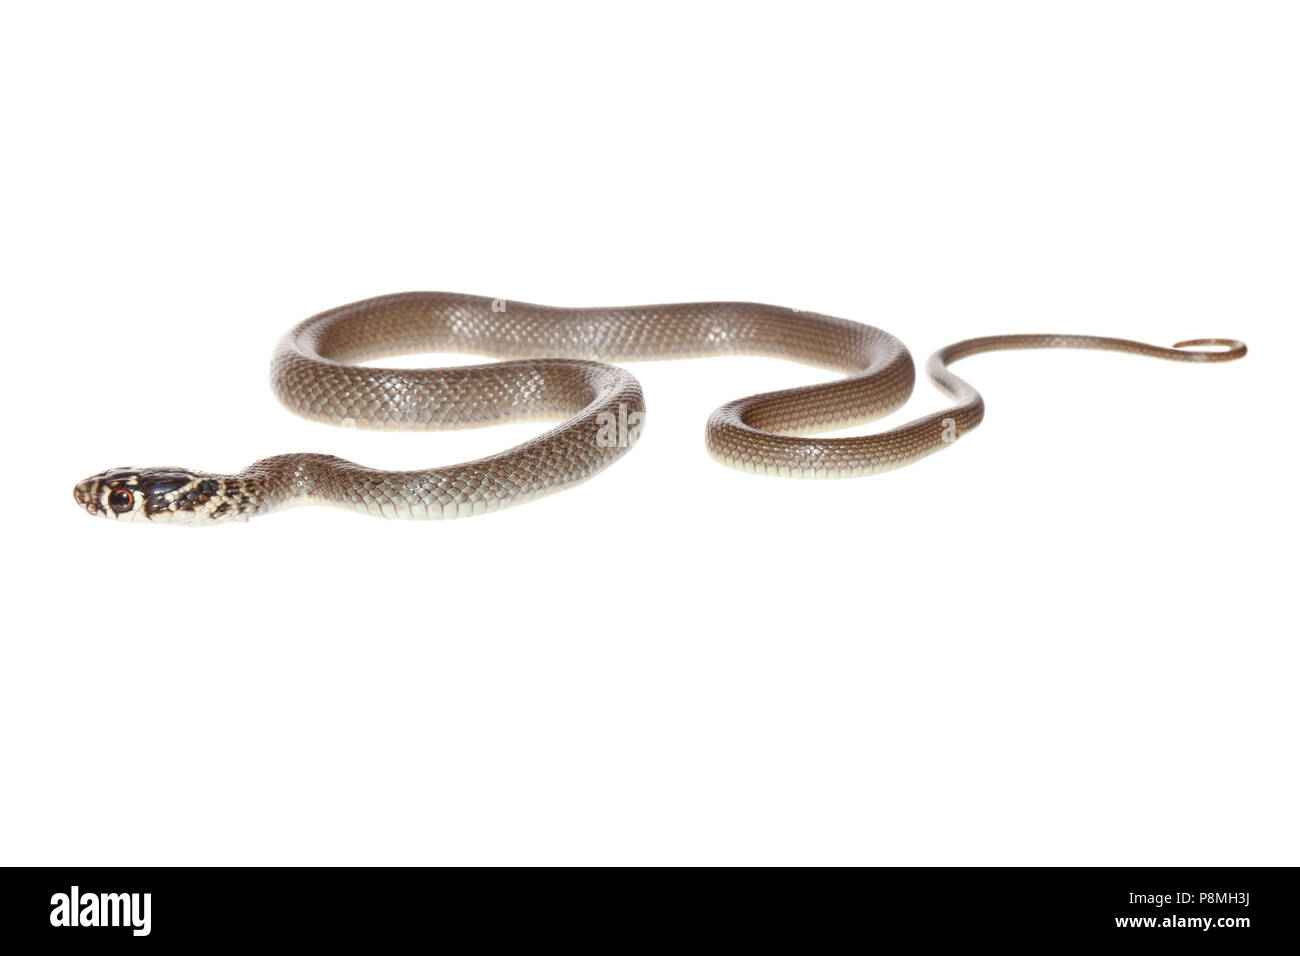 I capretti western frusta snake isolata contro uno sfondo bianco Foto Stock